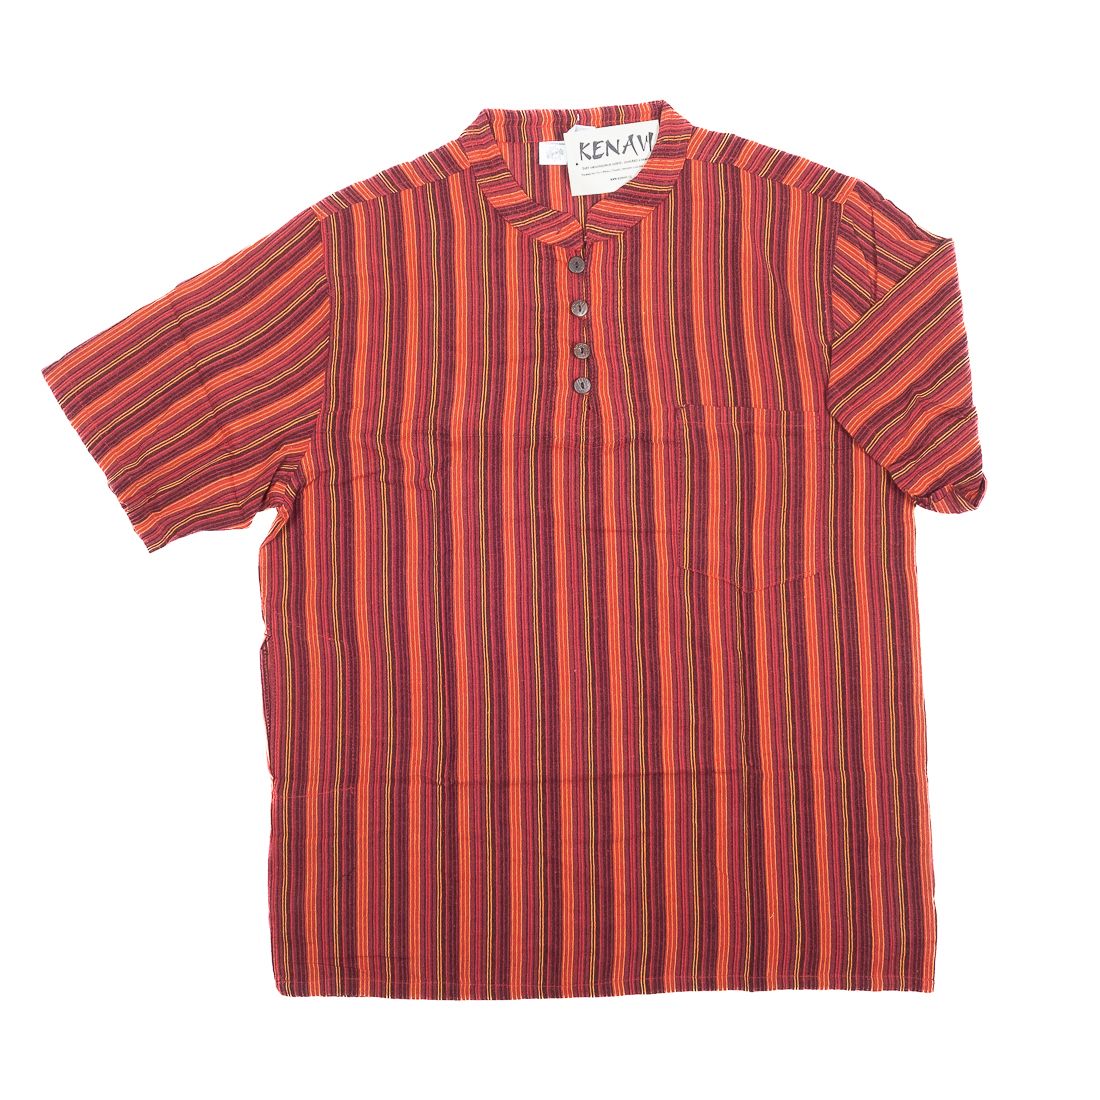 Pánská košile s krátkým rukávem NT0009-02-022 KENAVI